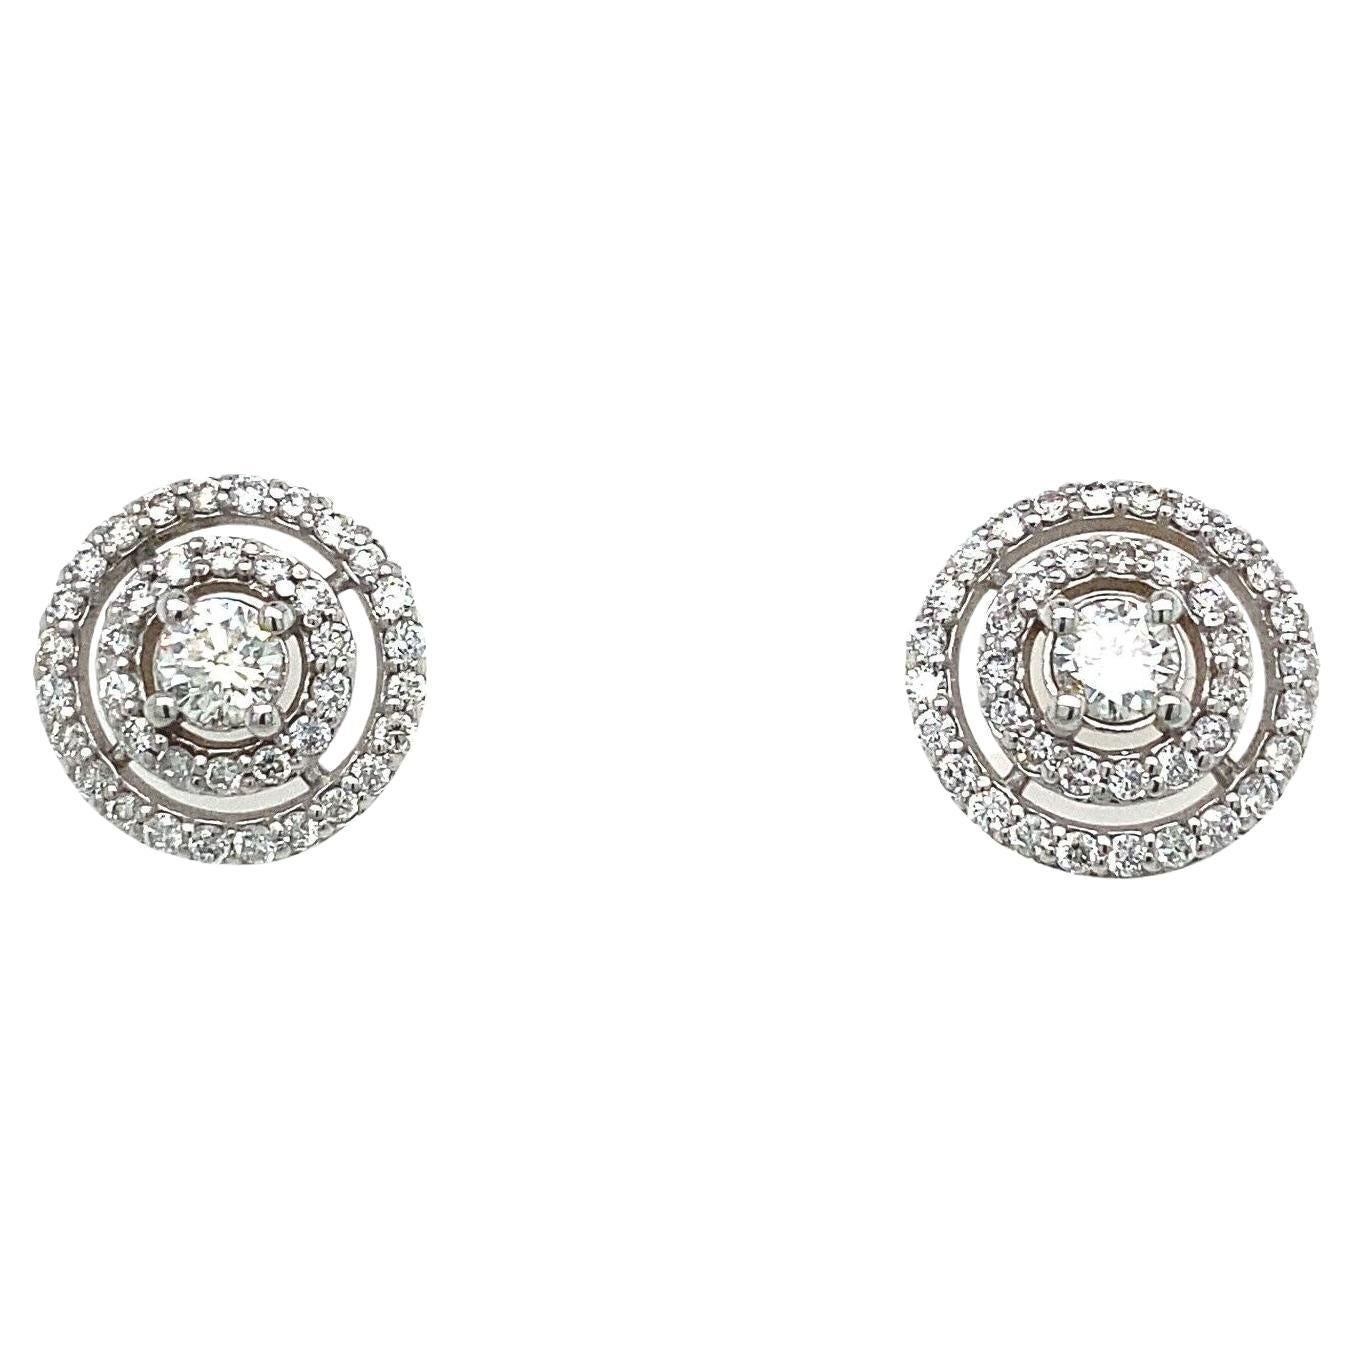 18ct Weißgold 2 Zeile Pave Set Diamant-Ohrringe mit 0,75ct von runden Diamanten gesetzt

Diese eleganten Ohrringe aus 18 Karat Weißgold sind mit 0,75 Karat runden Diamanten besetzt. Die Ohrringe sind in einer 2-reihigen, mit Diamanten besetzten